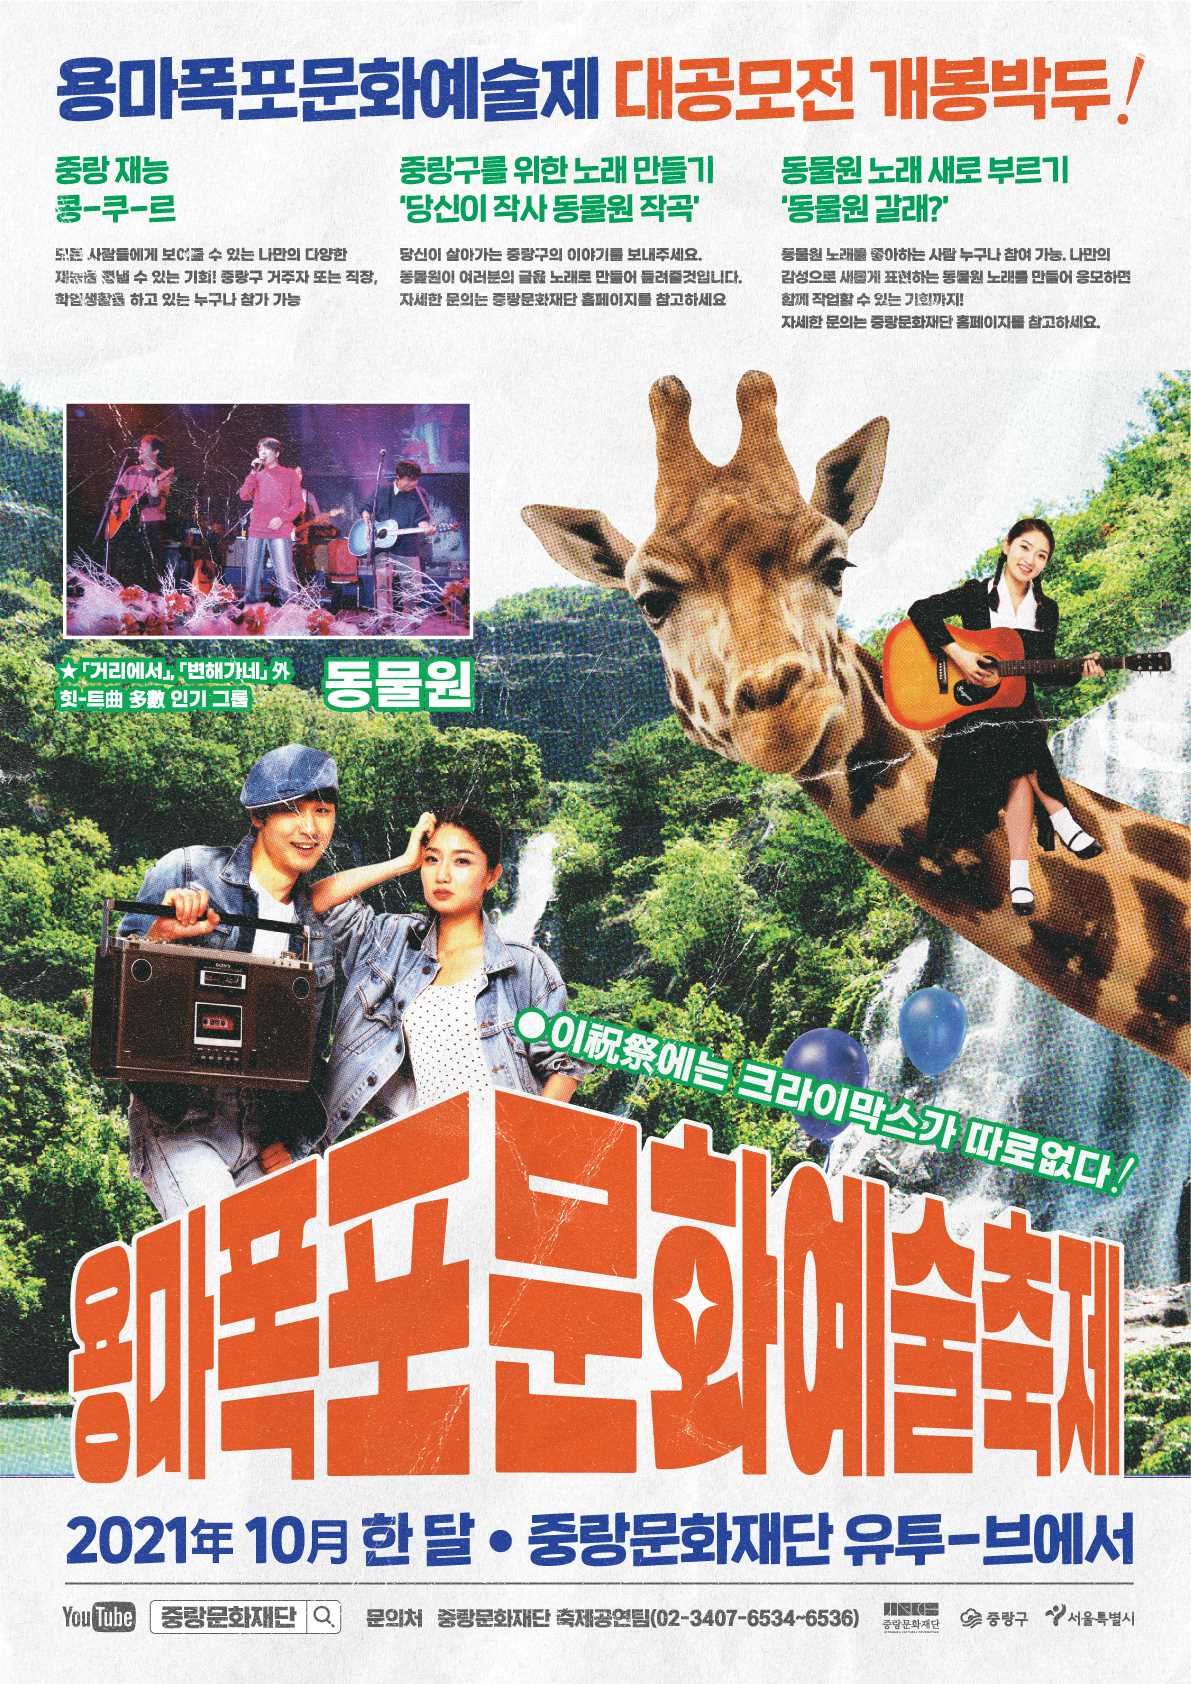 용마폭포문화축제 「동물원 갈래?」참여 아티스트 공모